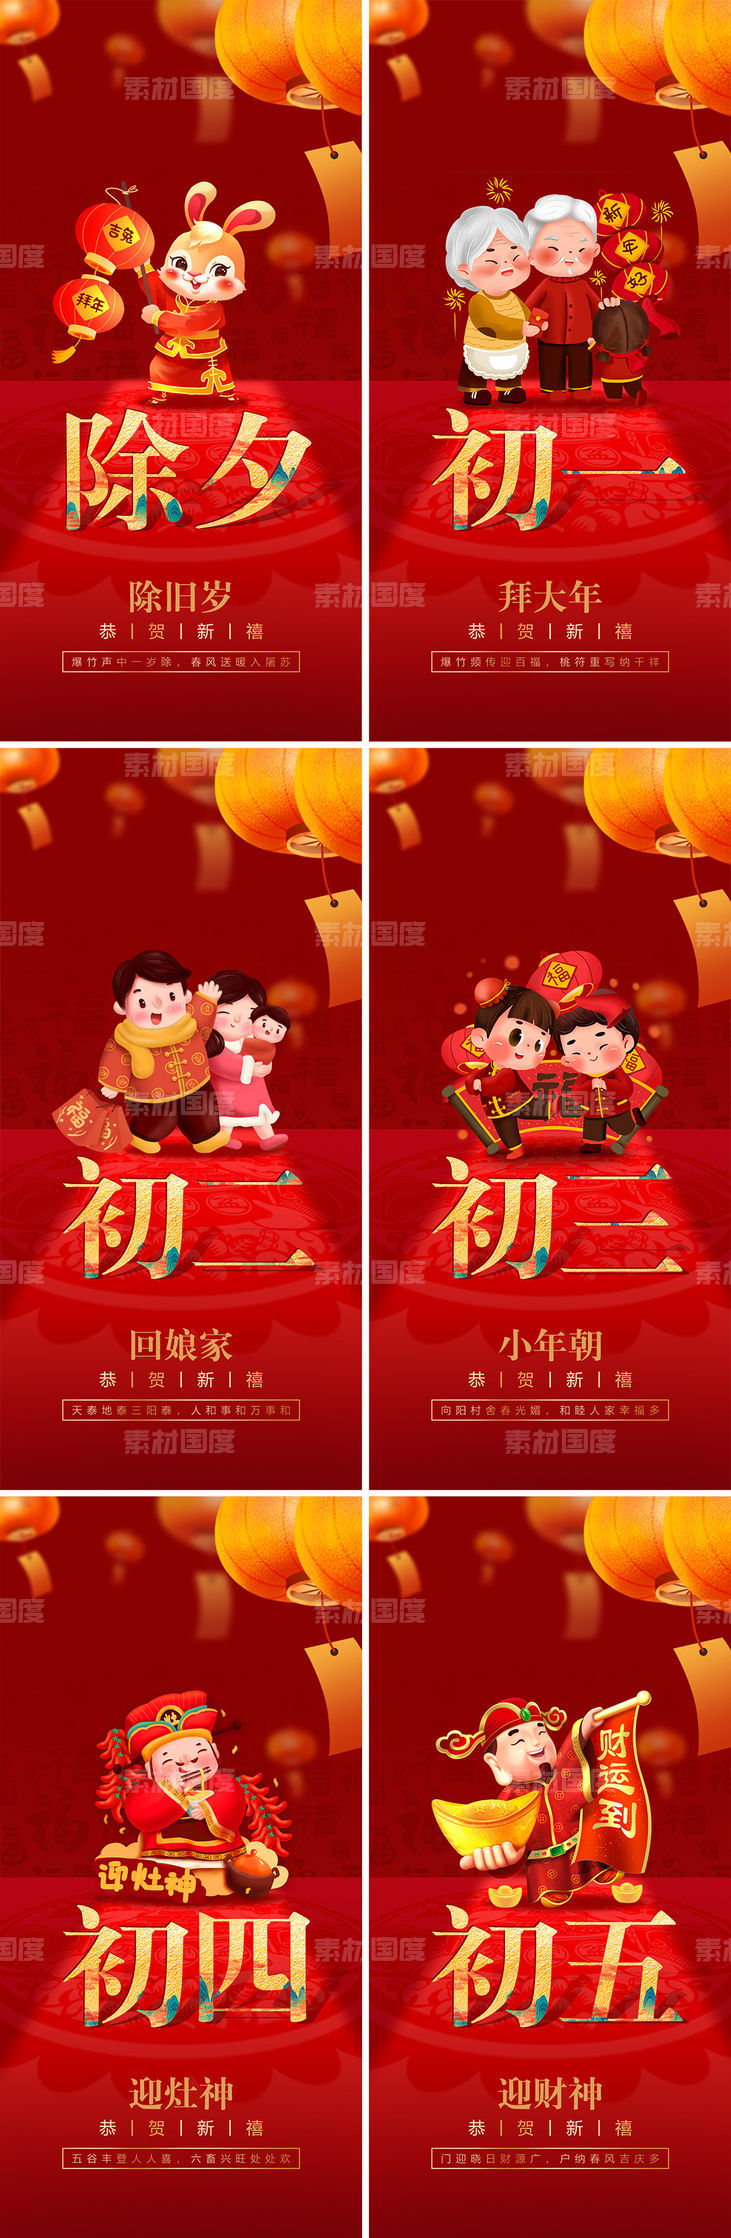 春节年俗系列